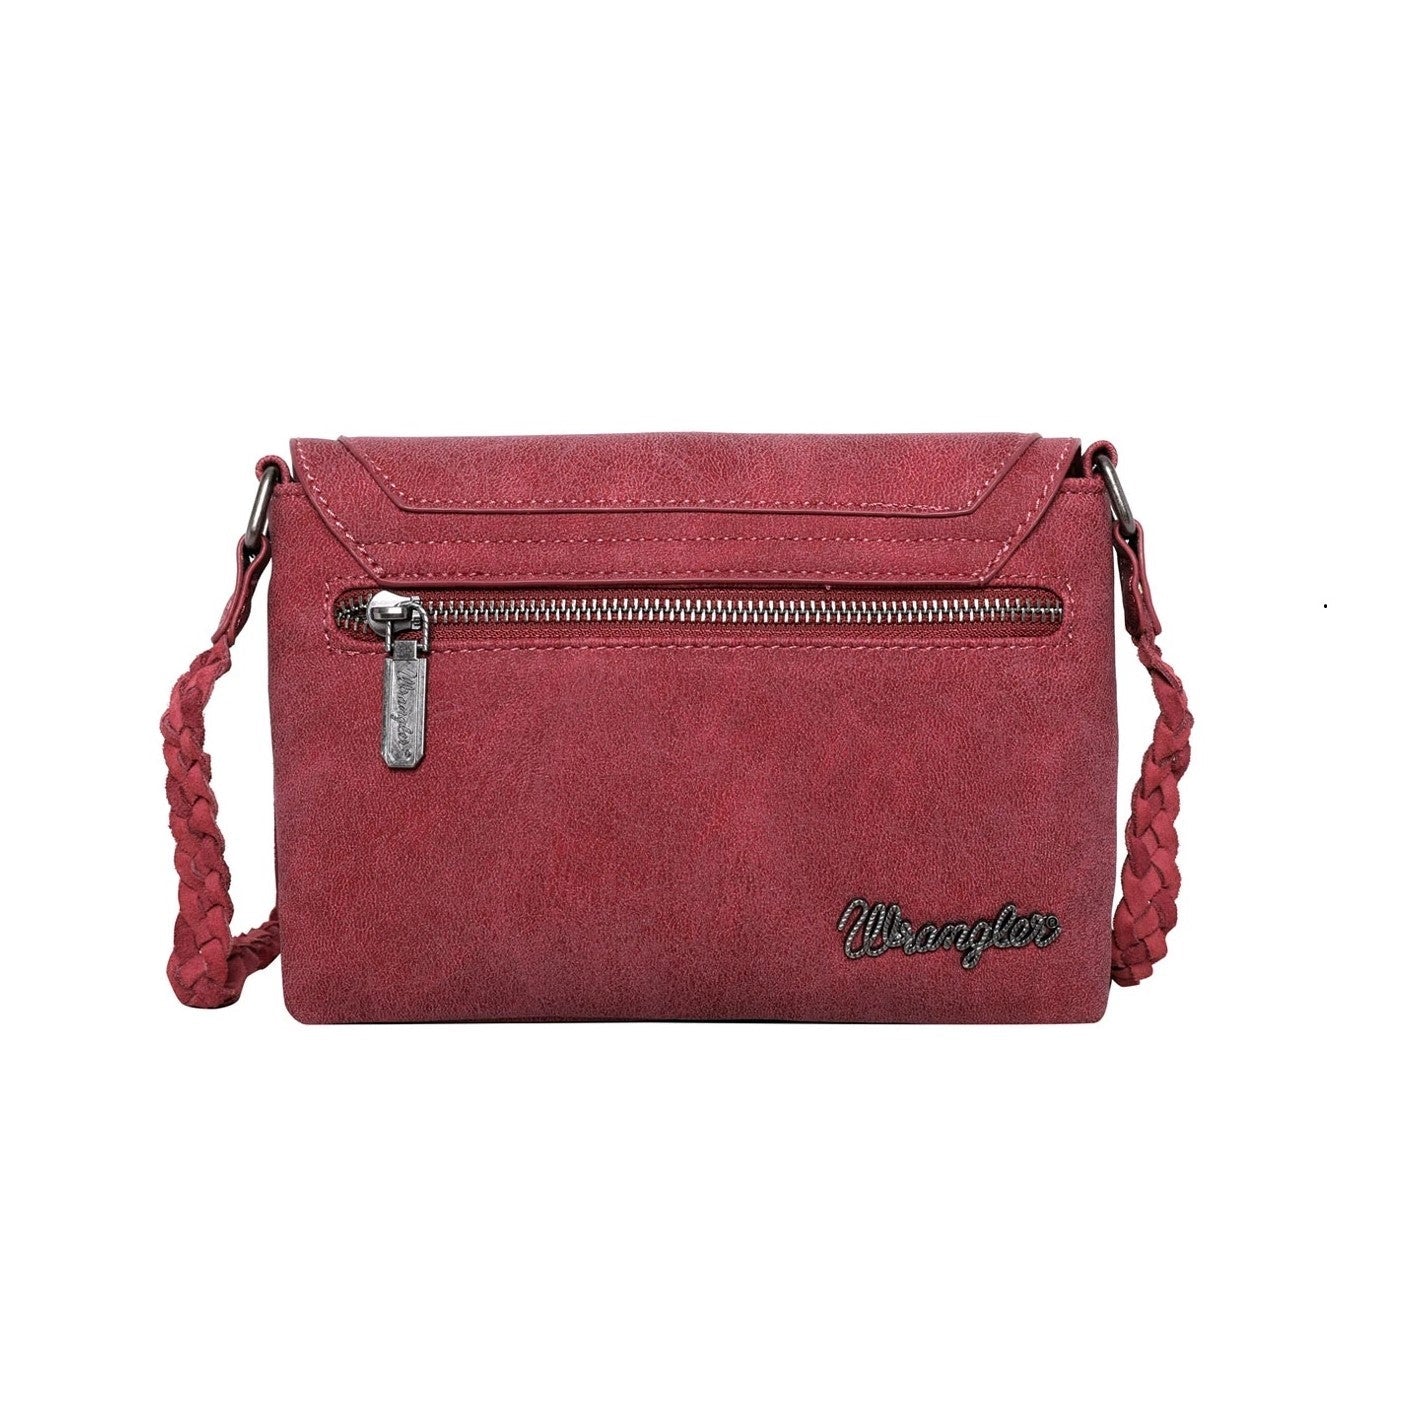 WGB04-001 RD-1 - Wrangler fringe crossbody bag back-Red